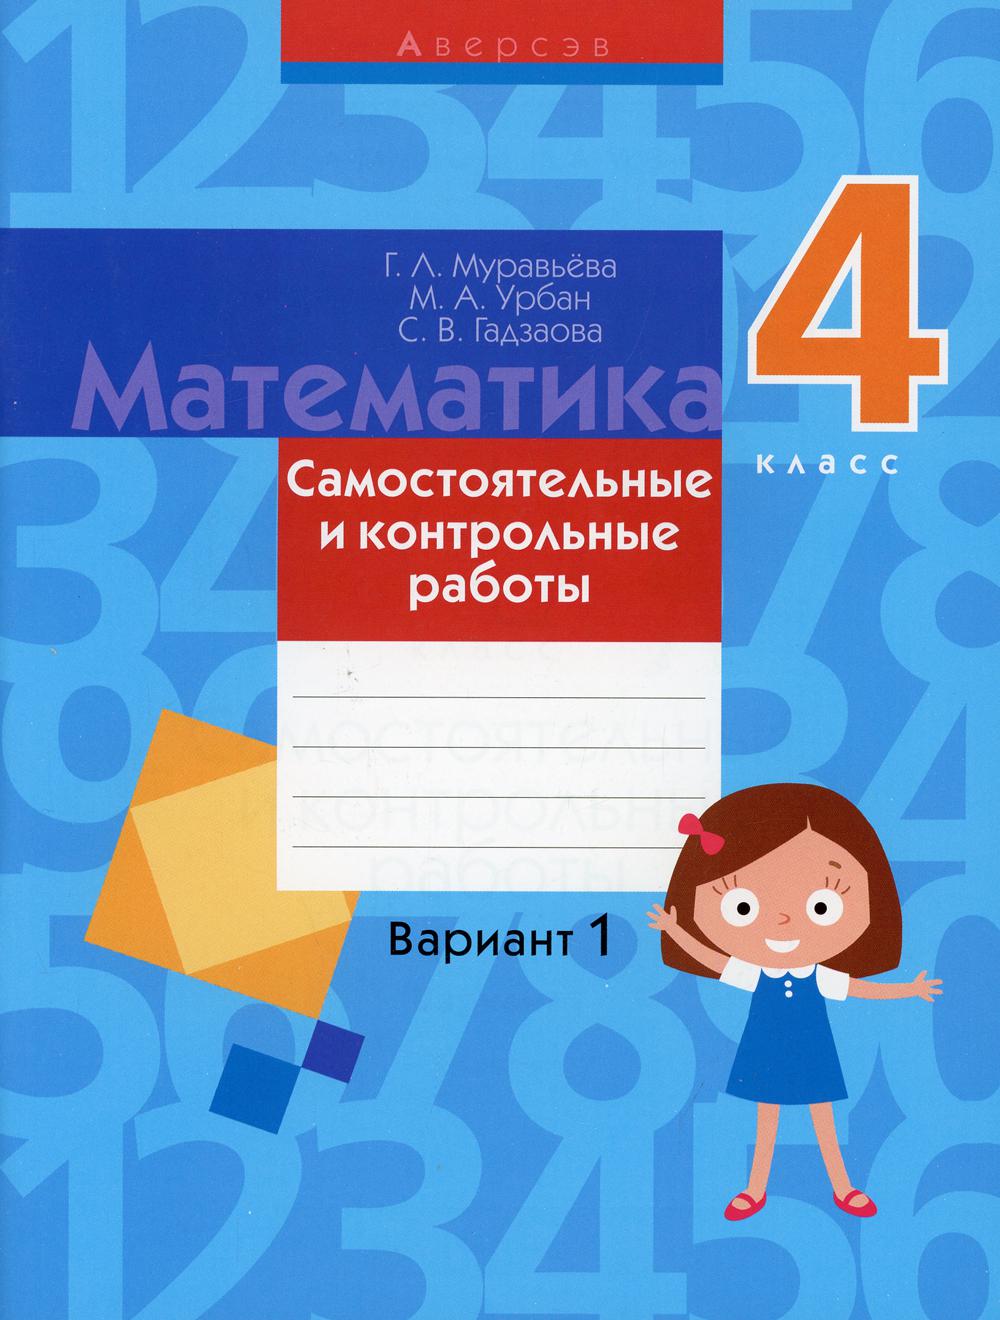 

Книга Математика. 4 класс: самостоятельные и контрольные работы: вариант 1